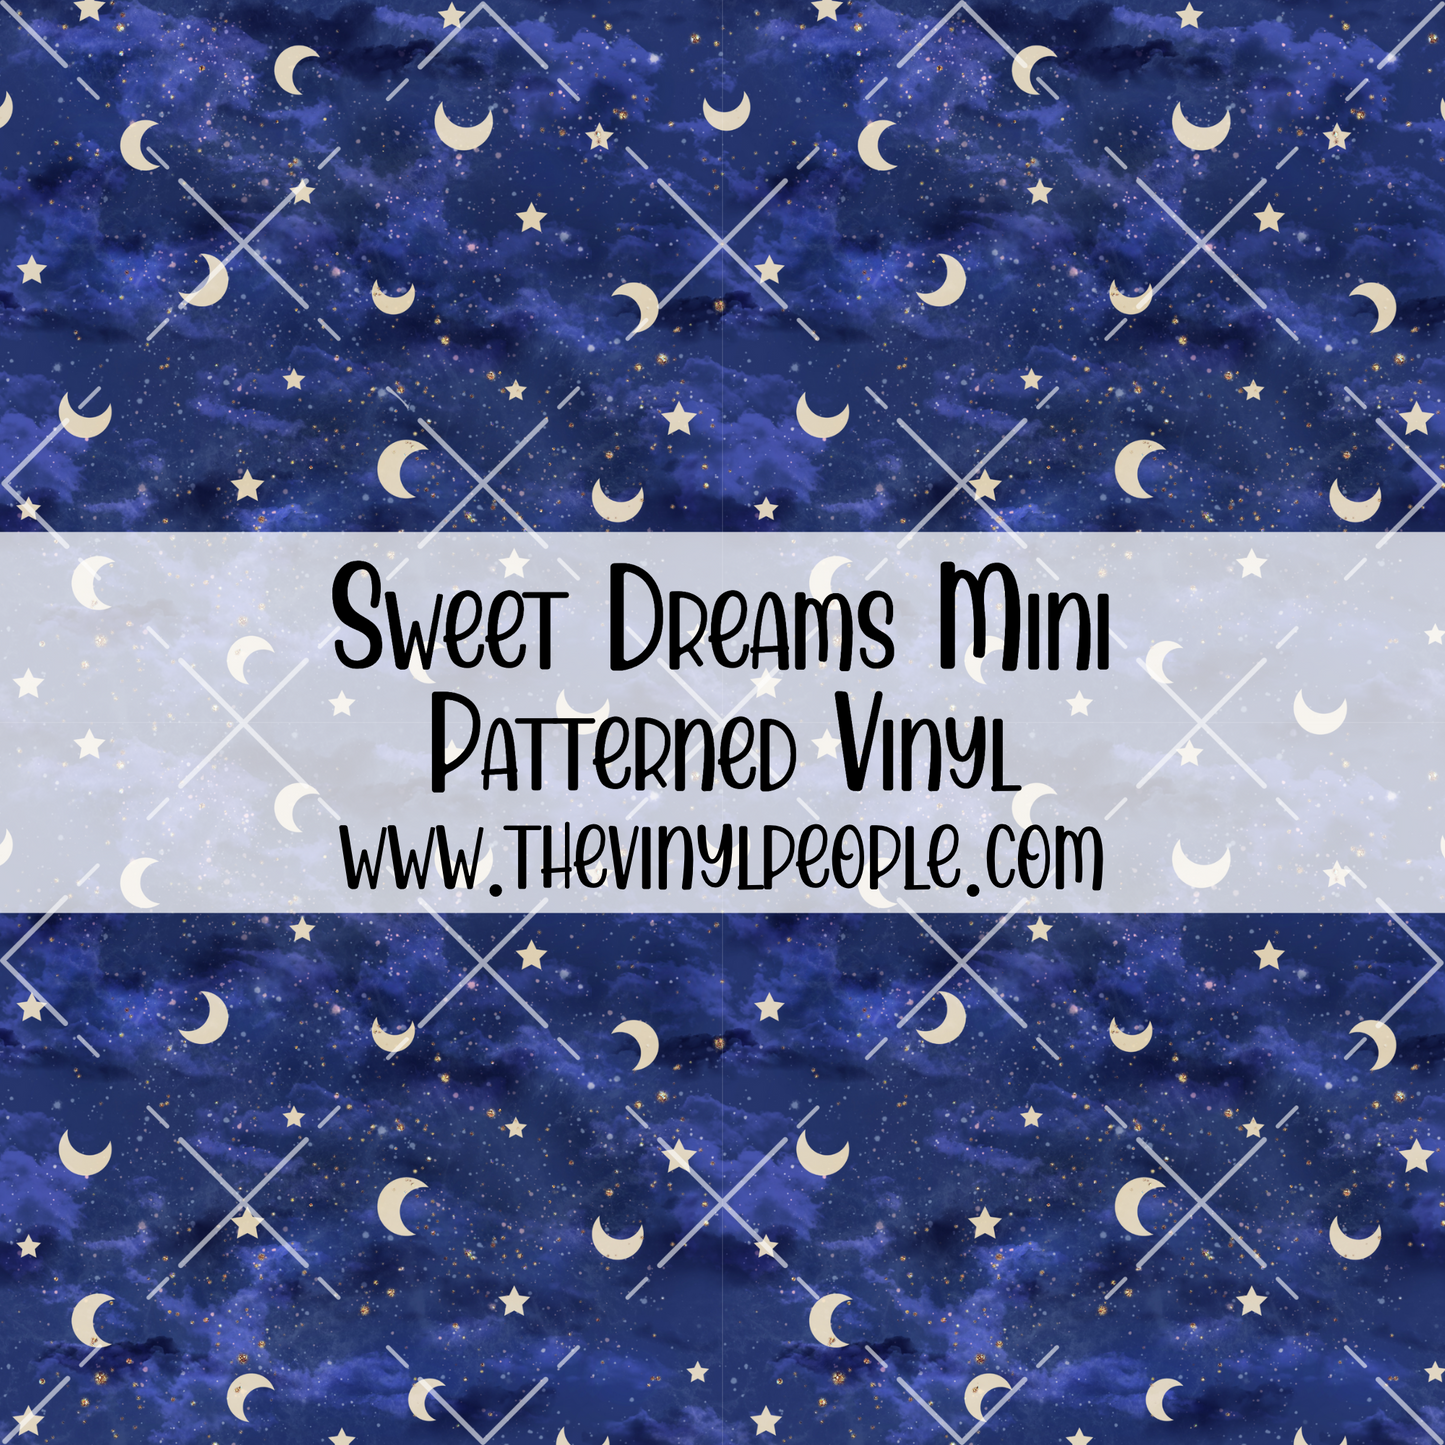 Sweet Dreams Patterned Vinyl